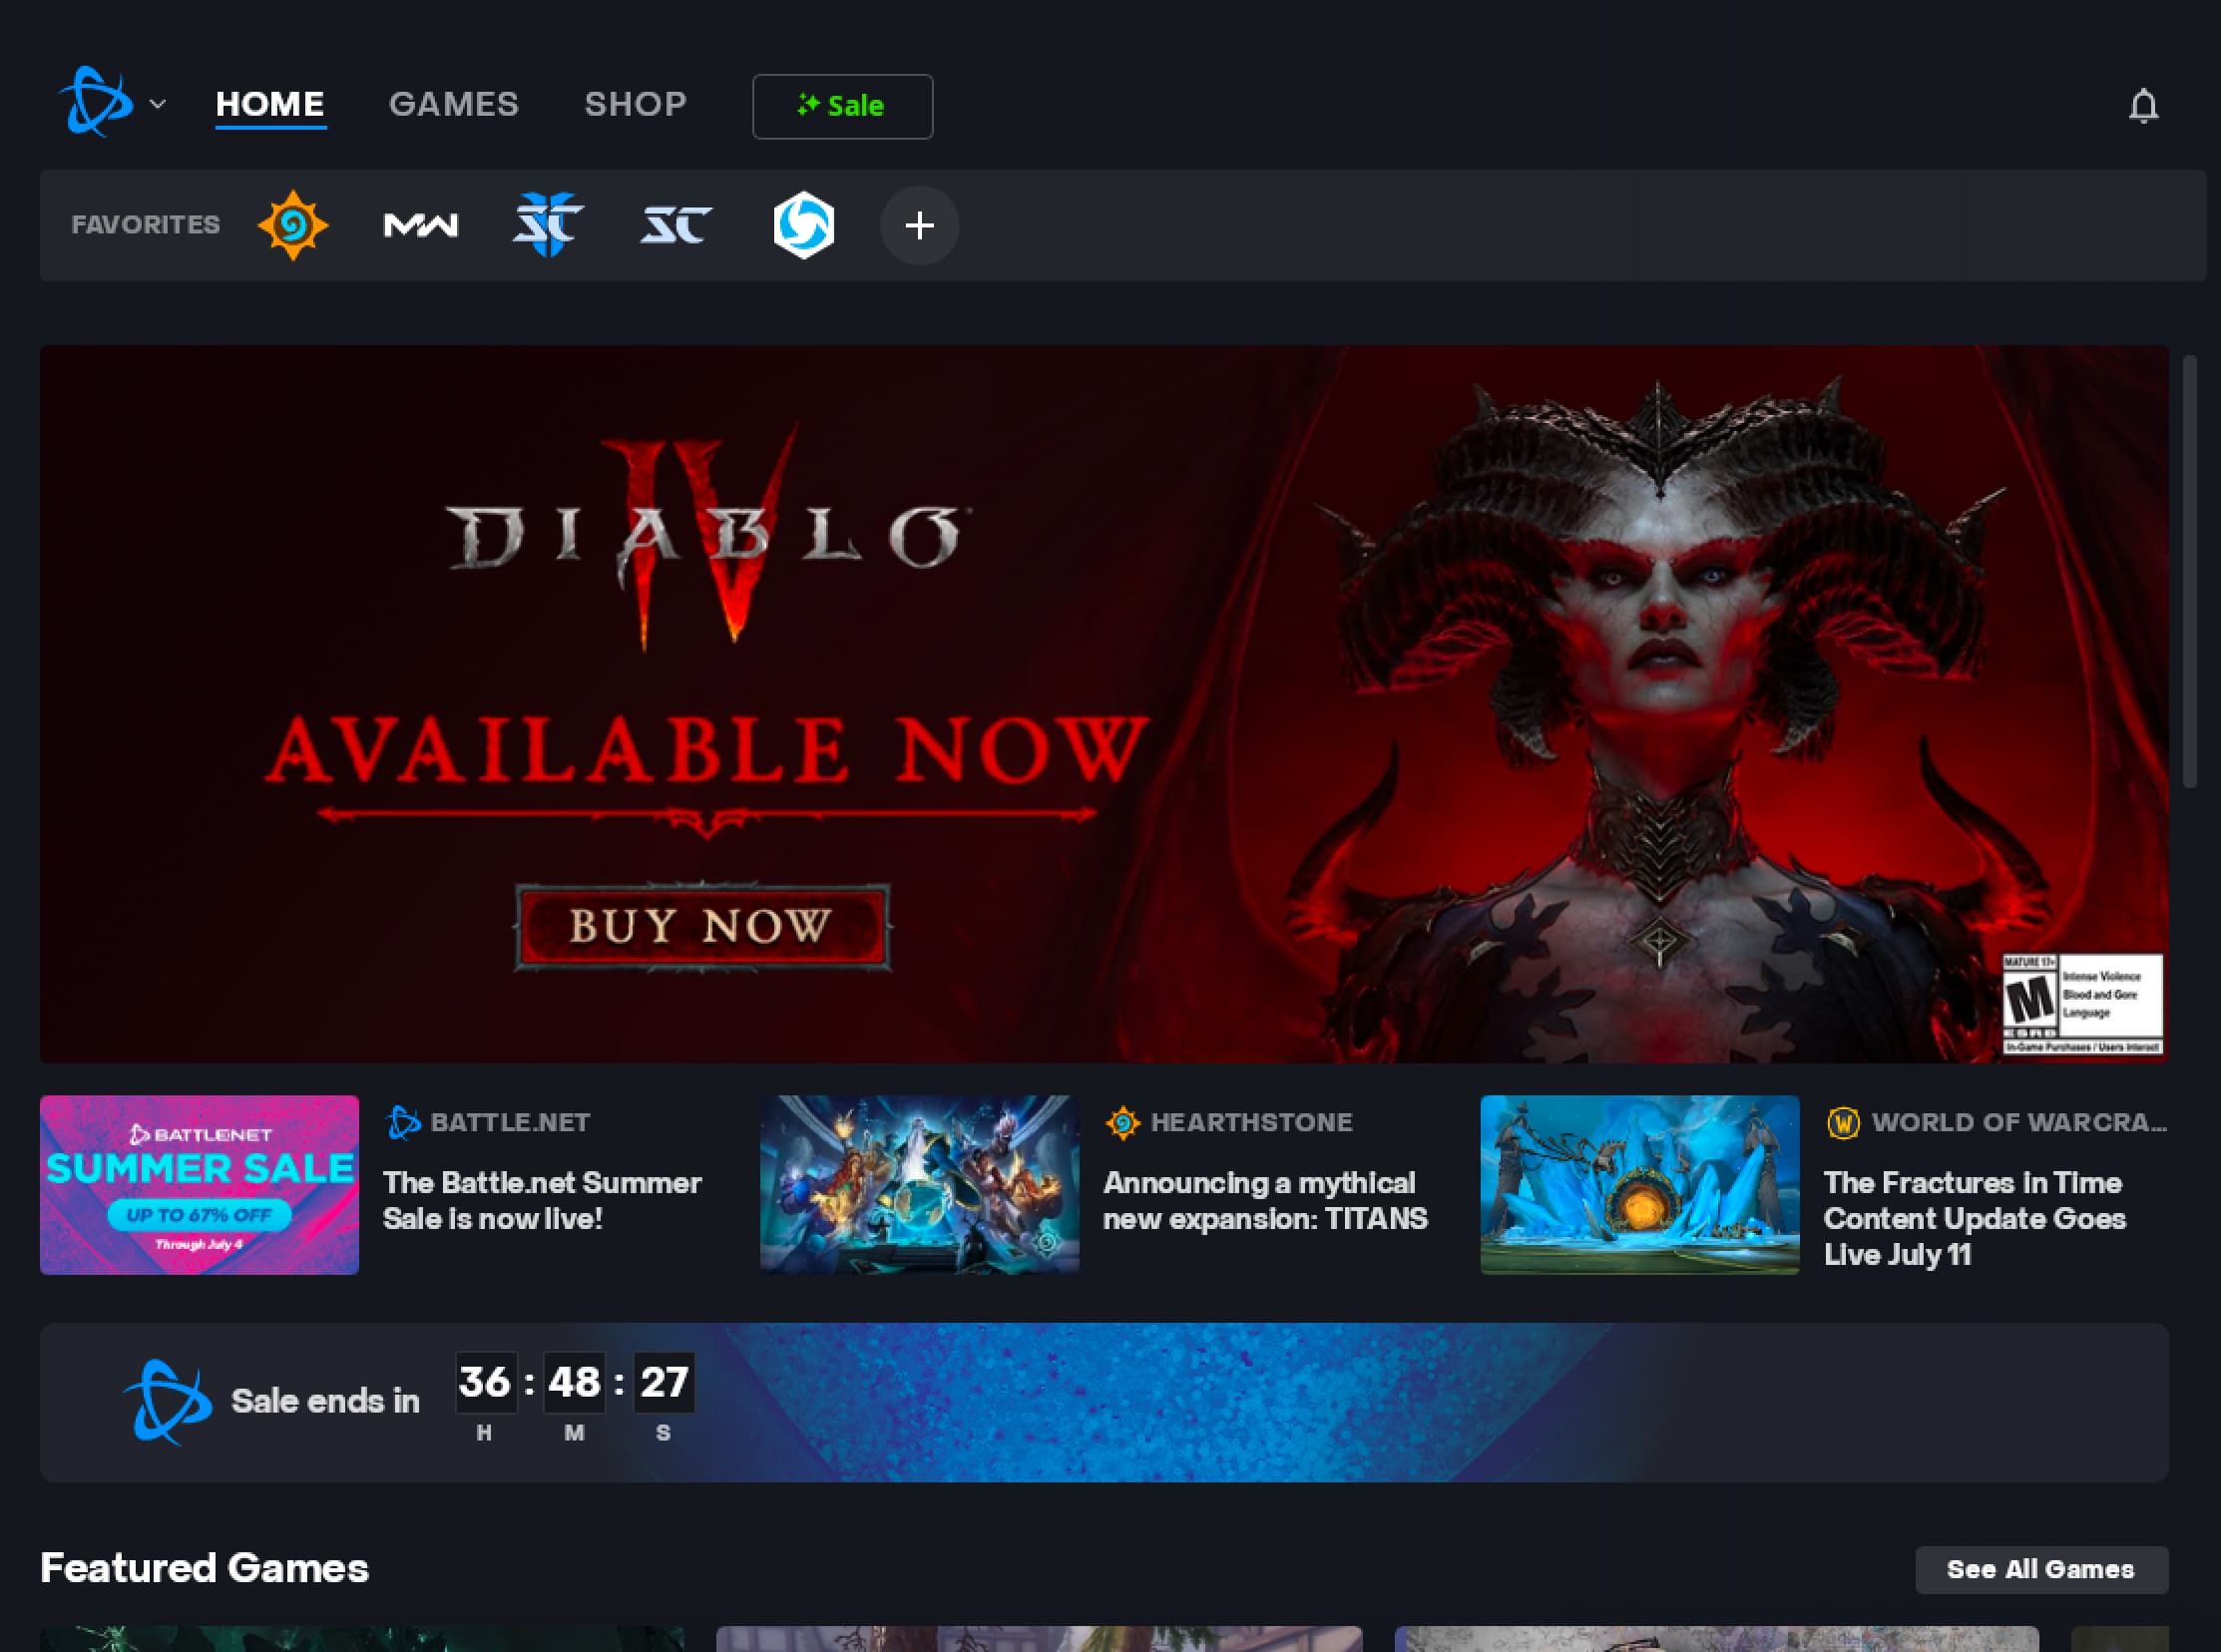 Blizzard Battle.Net Desktop App